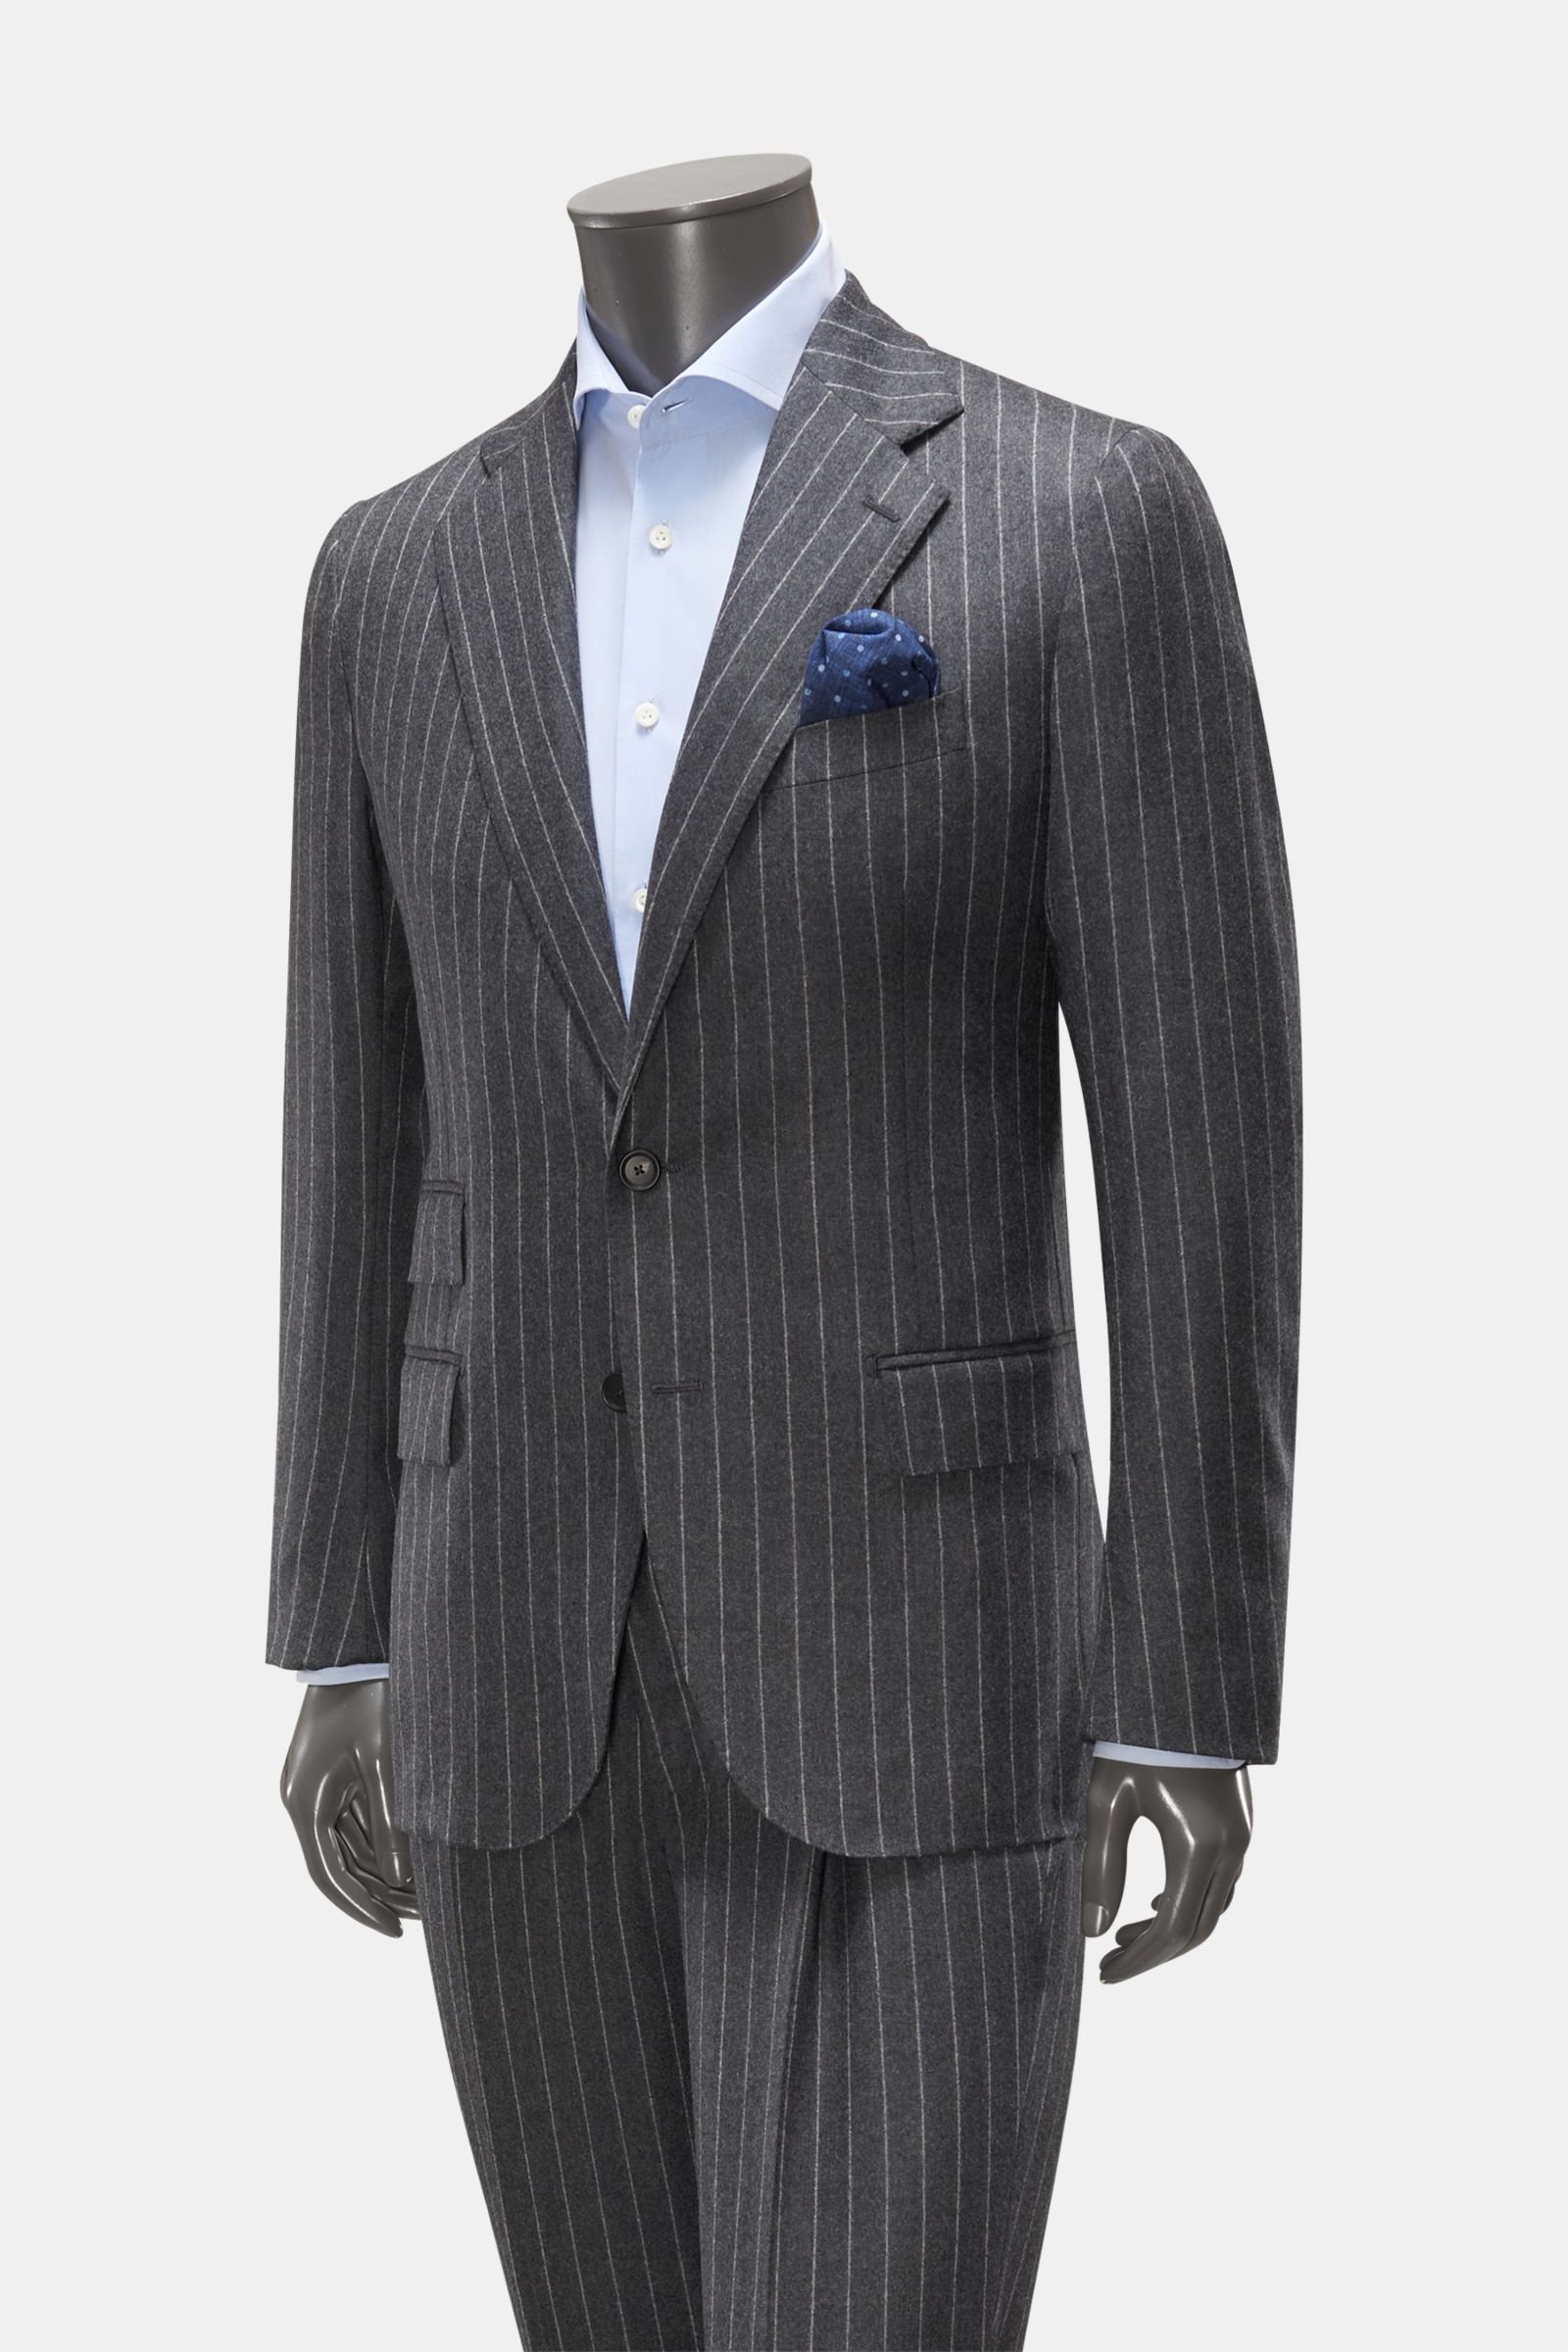 Suit 'Riviera' dark grey striped